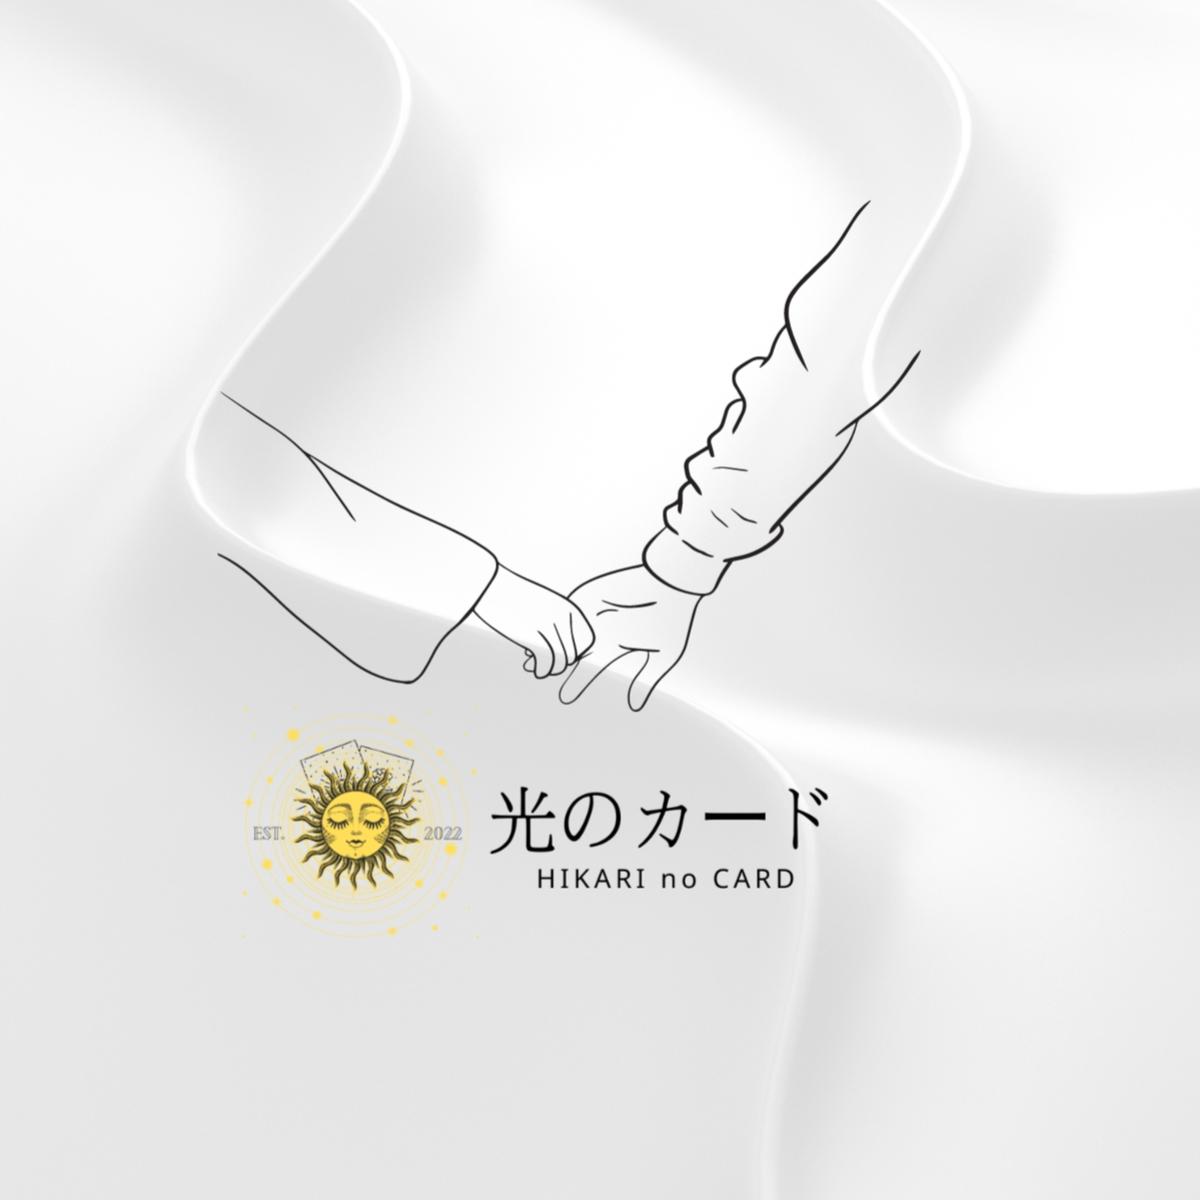 Hikari no Card